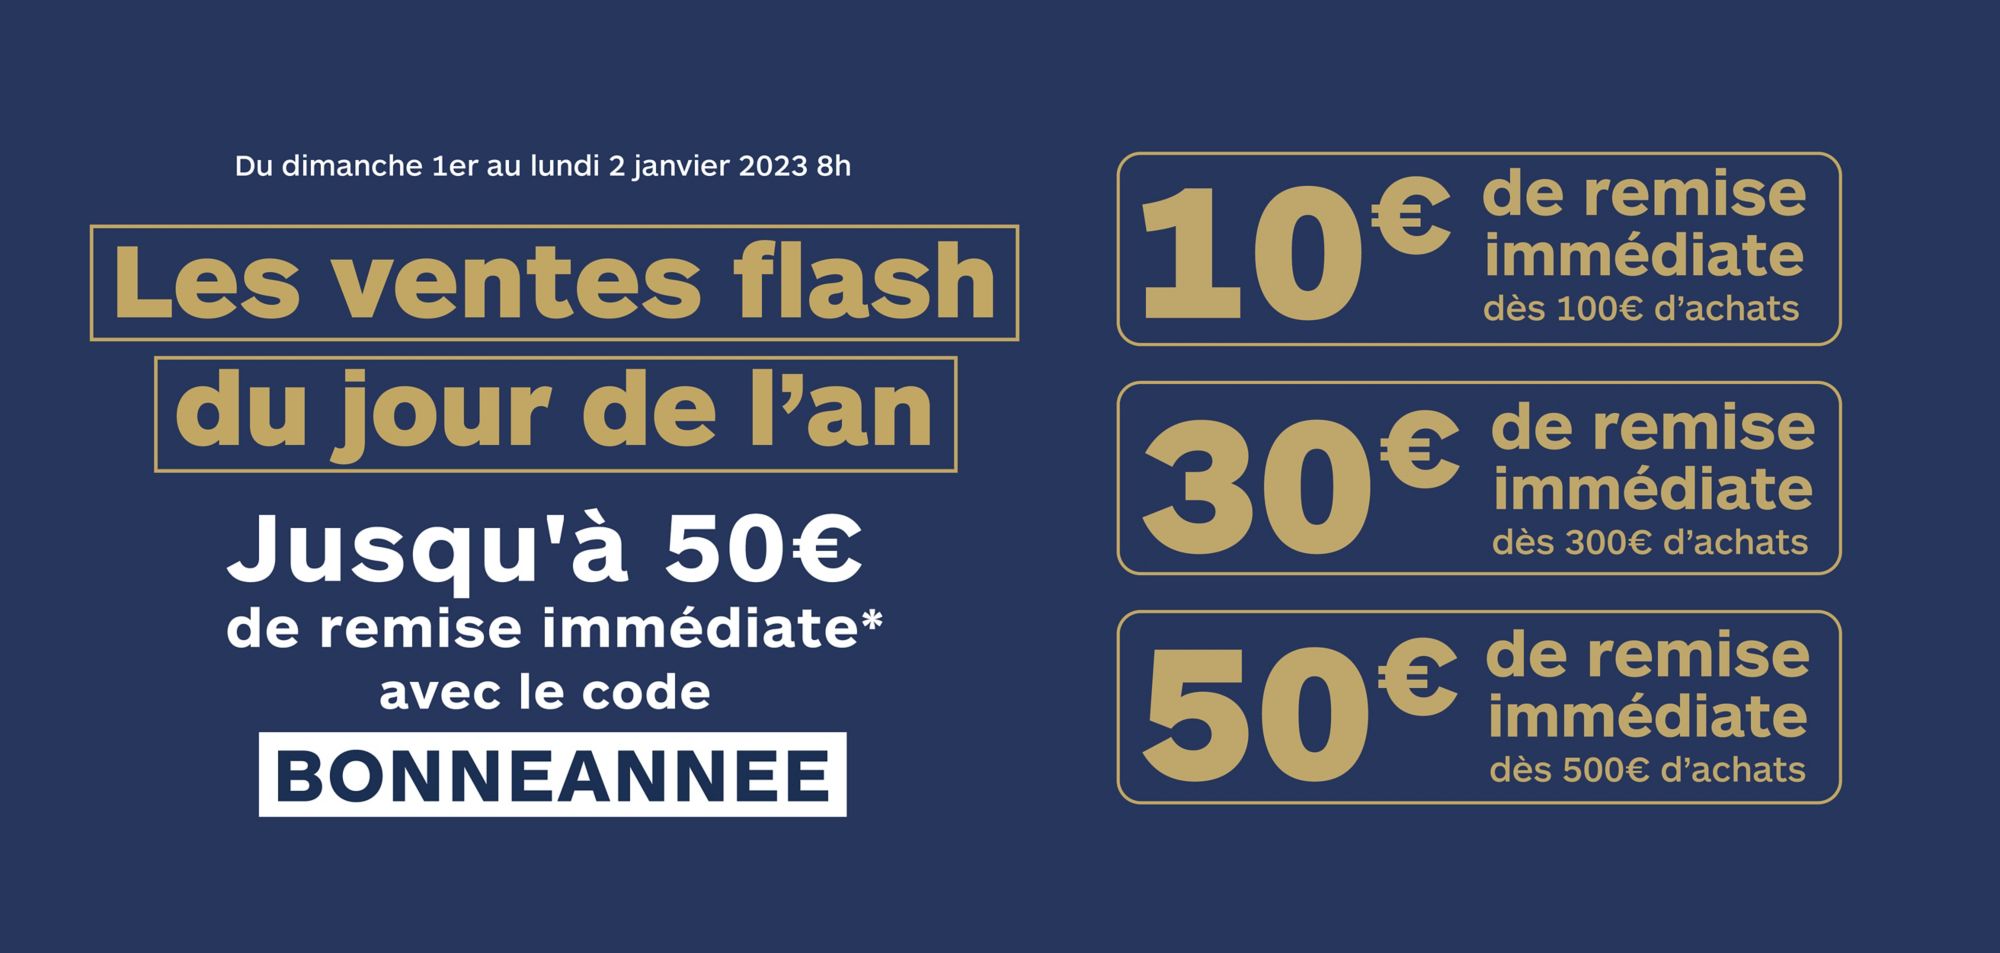 Les ventes flash du jour de l'an jusqu'à 50€ de remise immédiate avec le code BONNEANNEE.